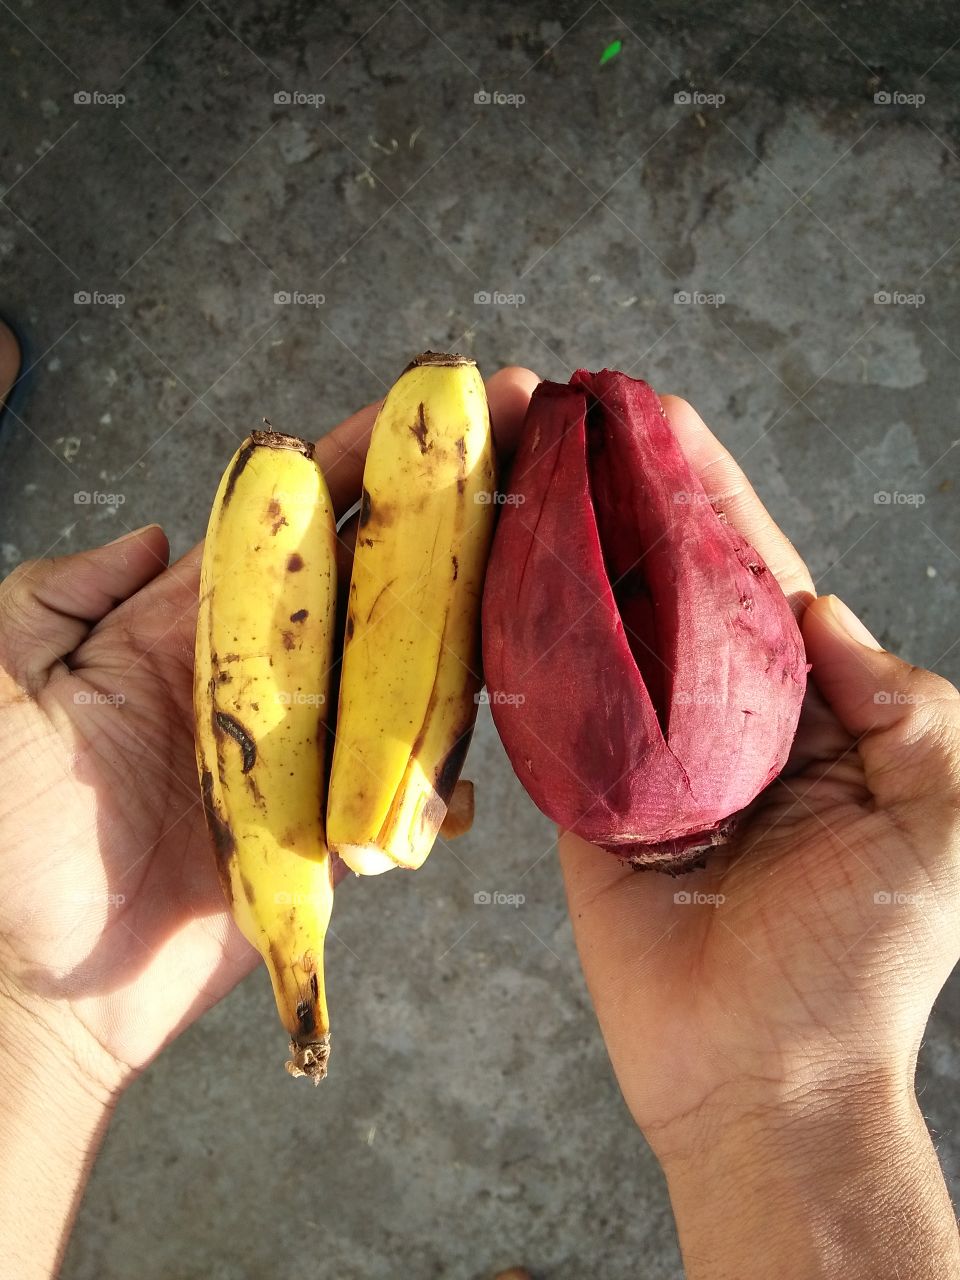 High angle view of banana and beet on hand